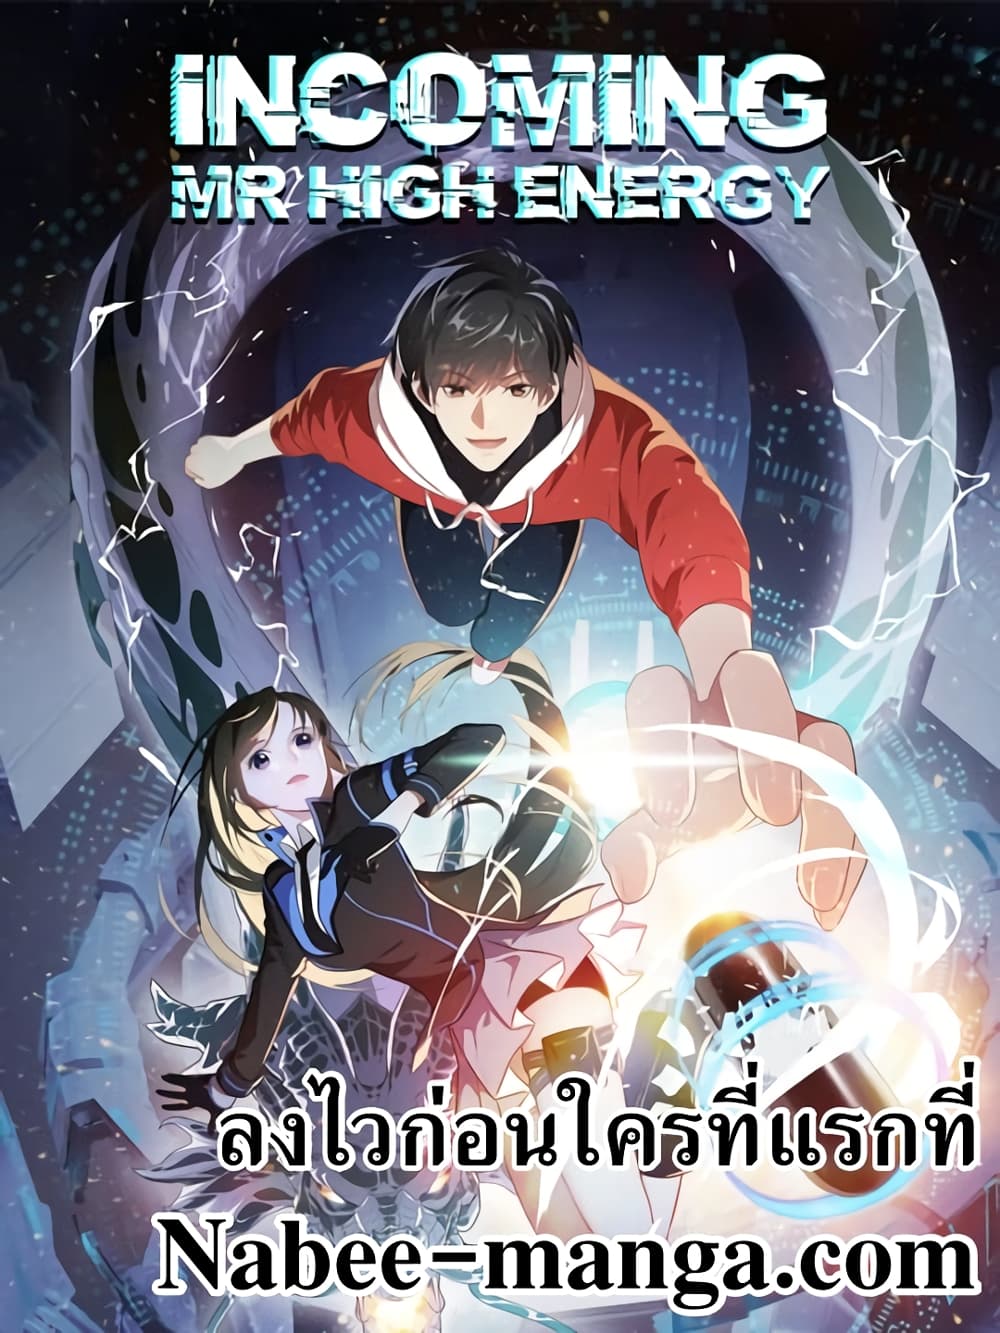 High Energy Strikes 149 (1)